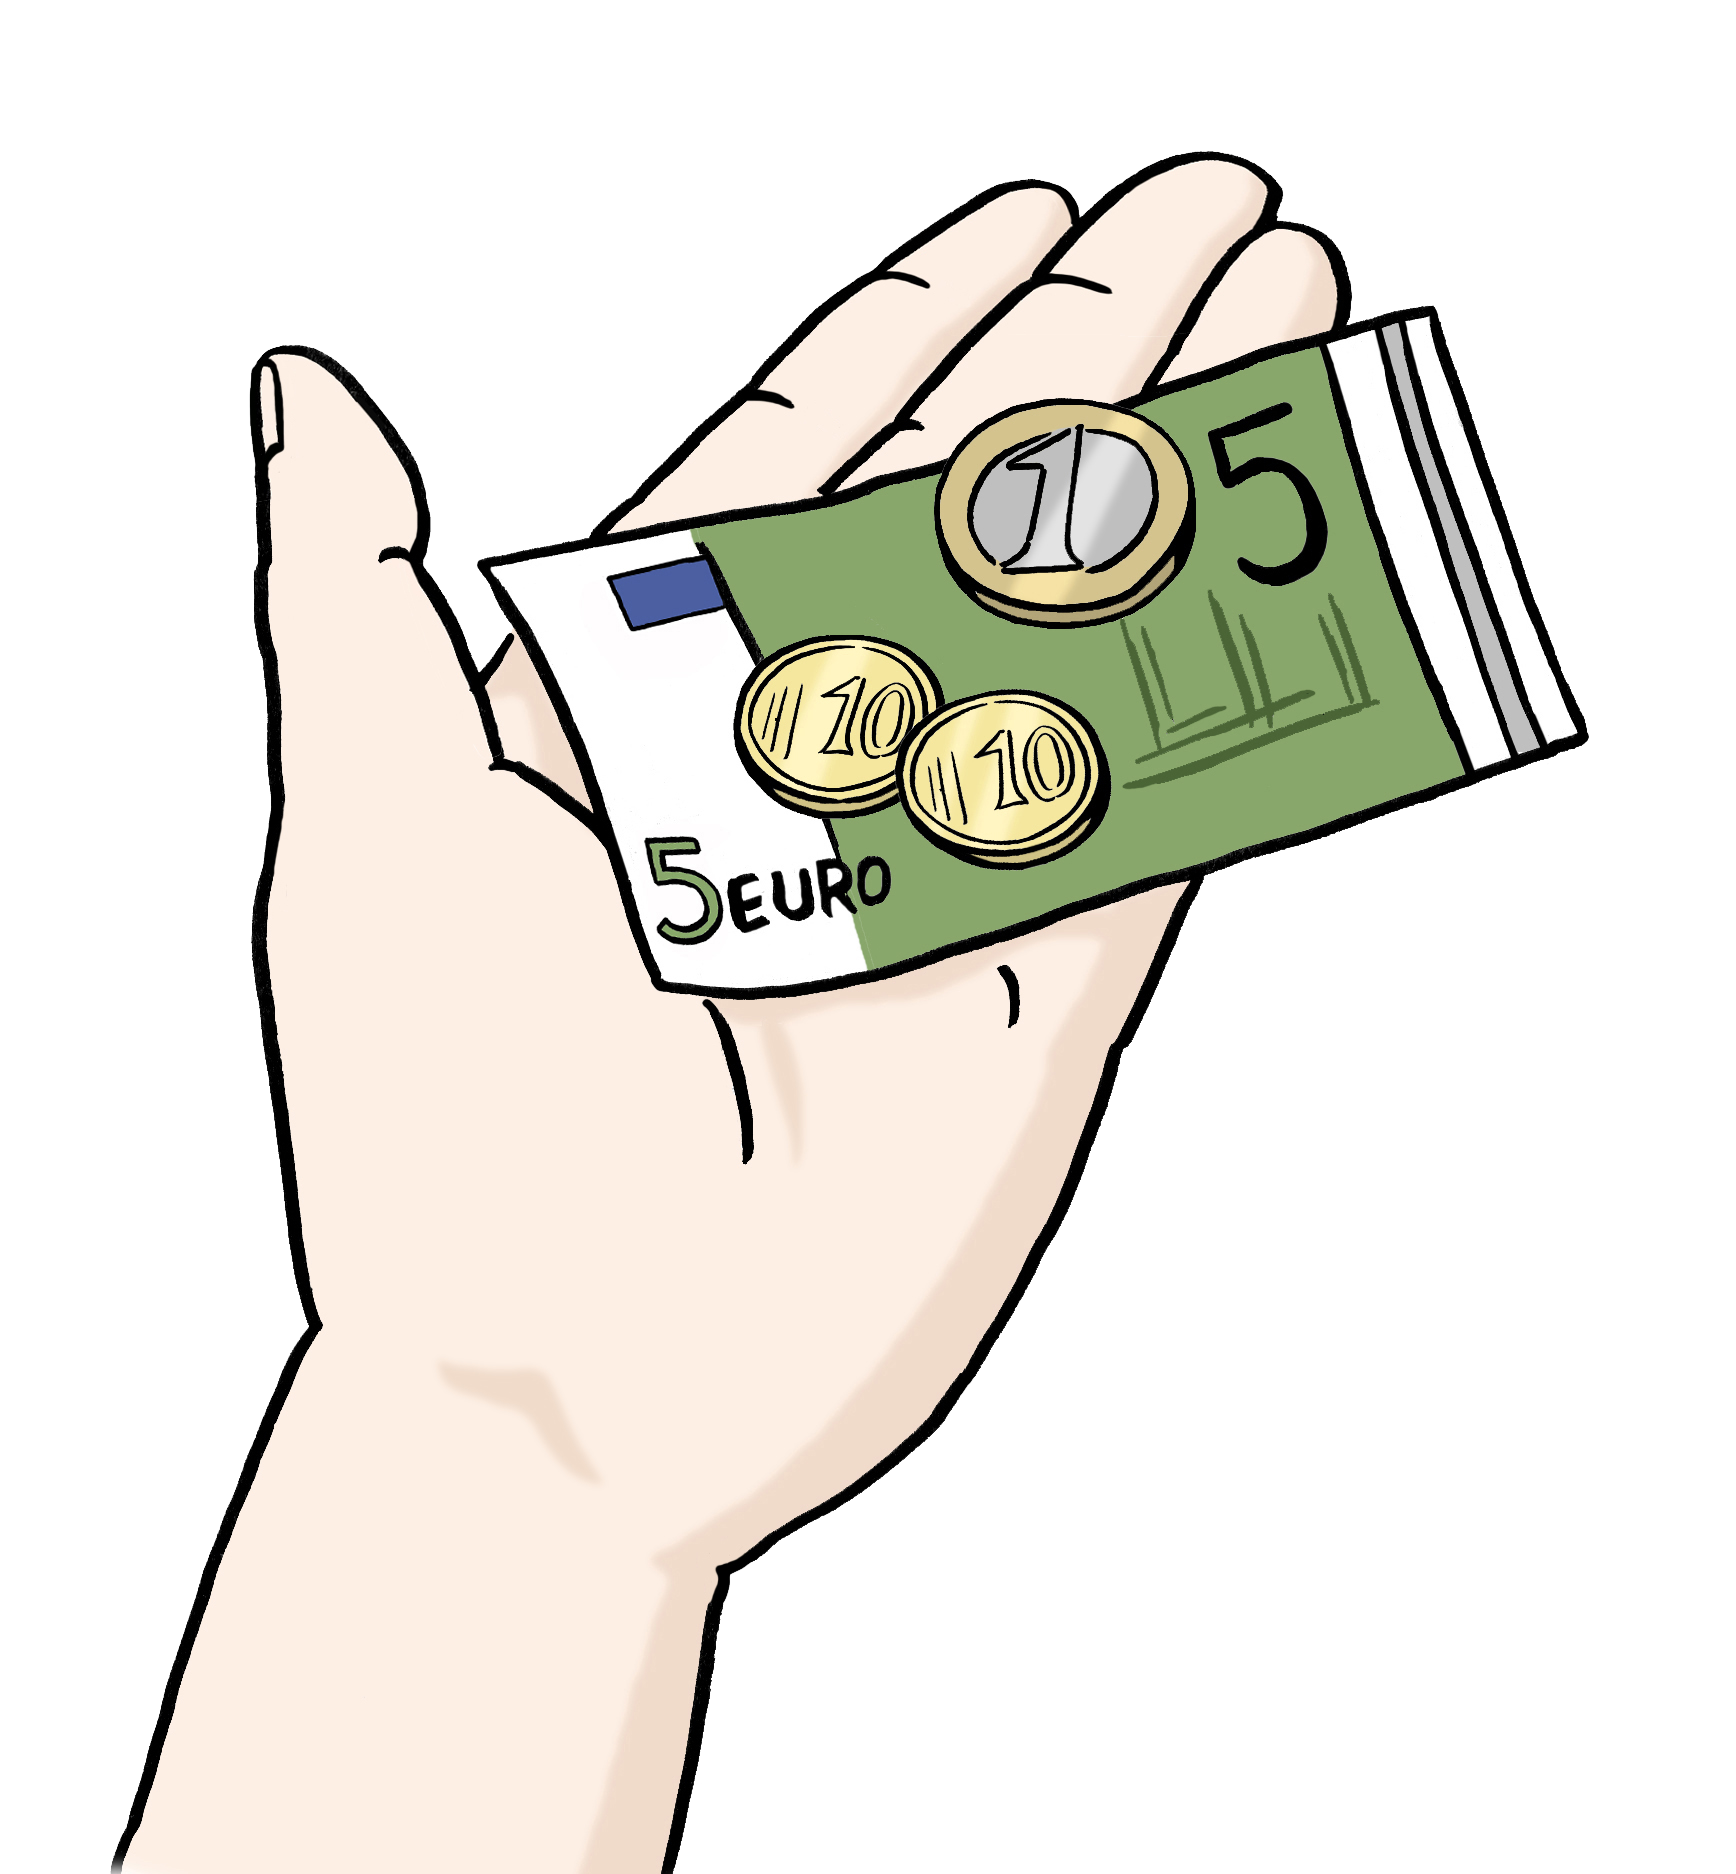 Eine gezeichnete Hand mit Geld in der Handfläche.